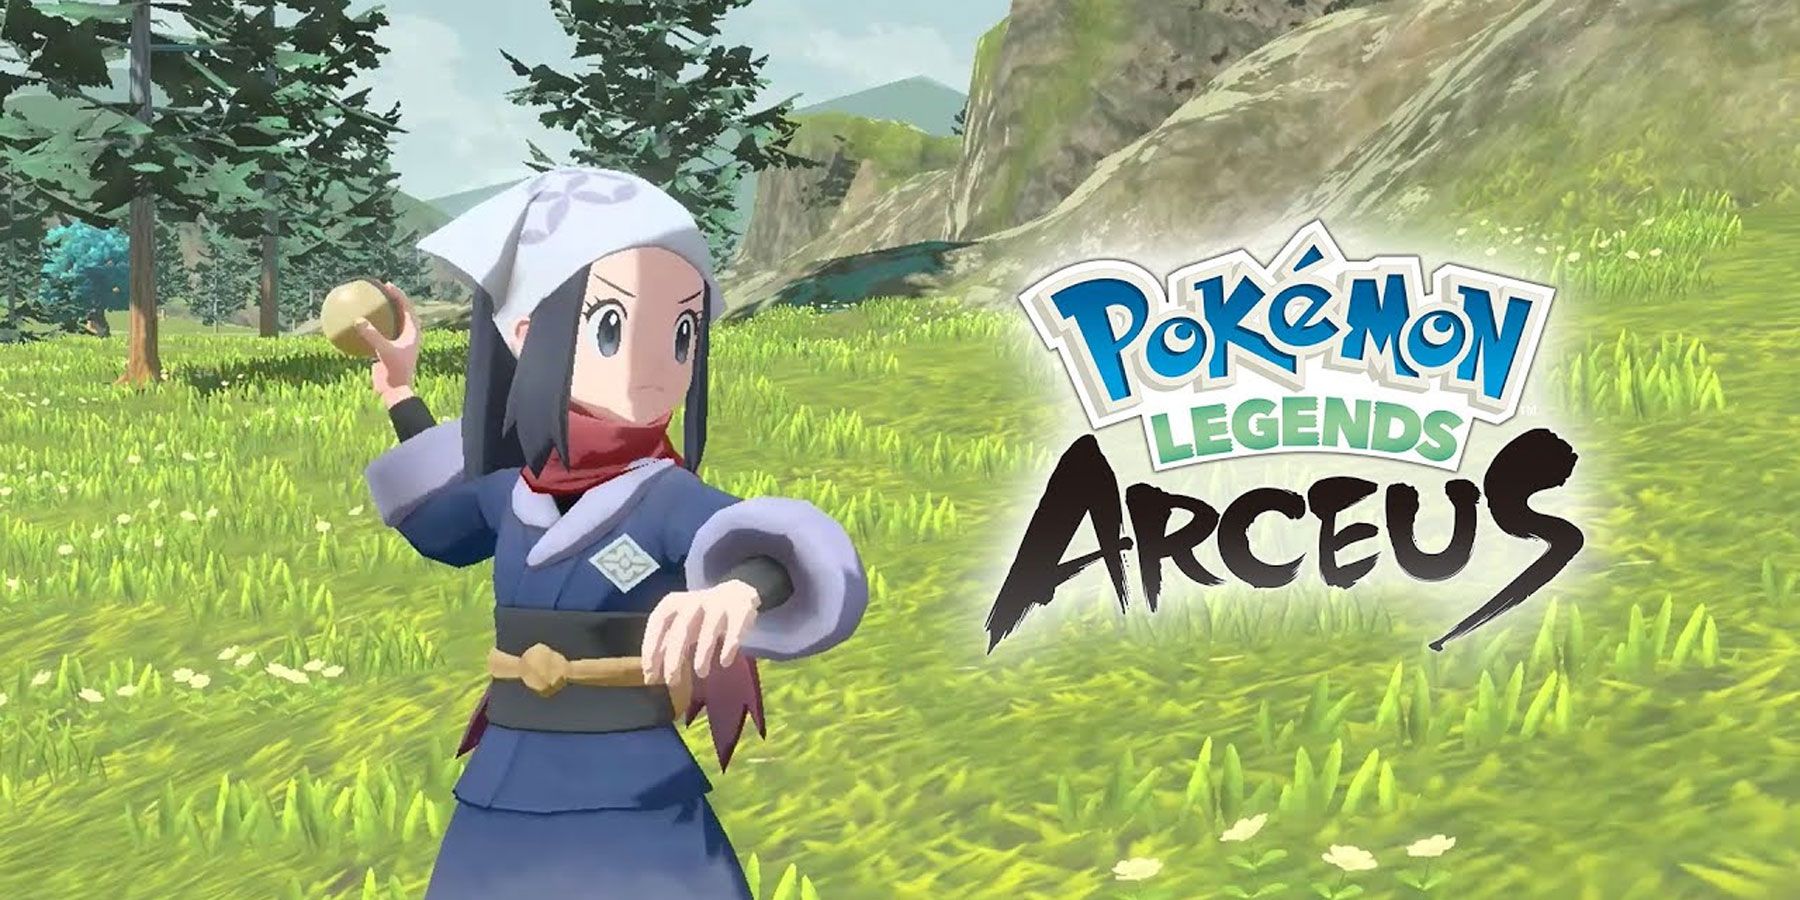 Dawn's Blue Hair in Pokemon Legends: Arceus - wide 4